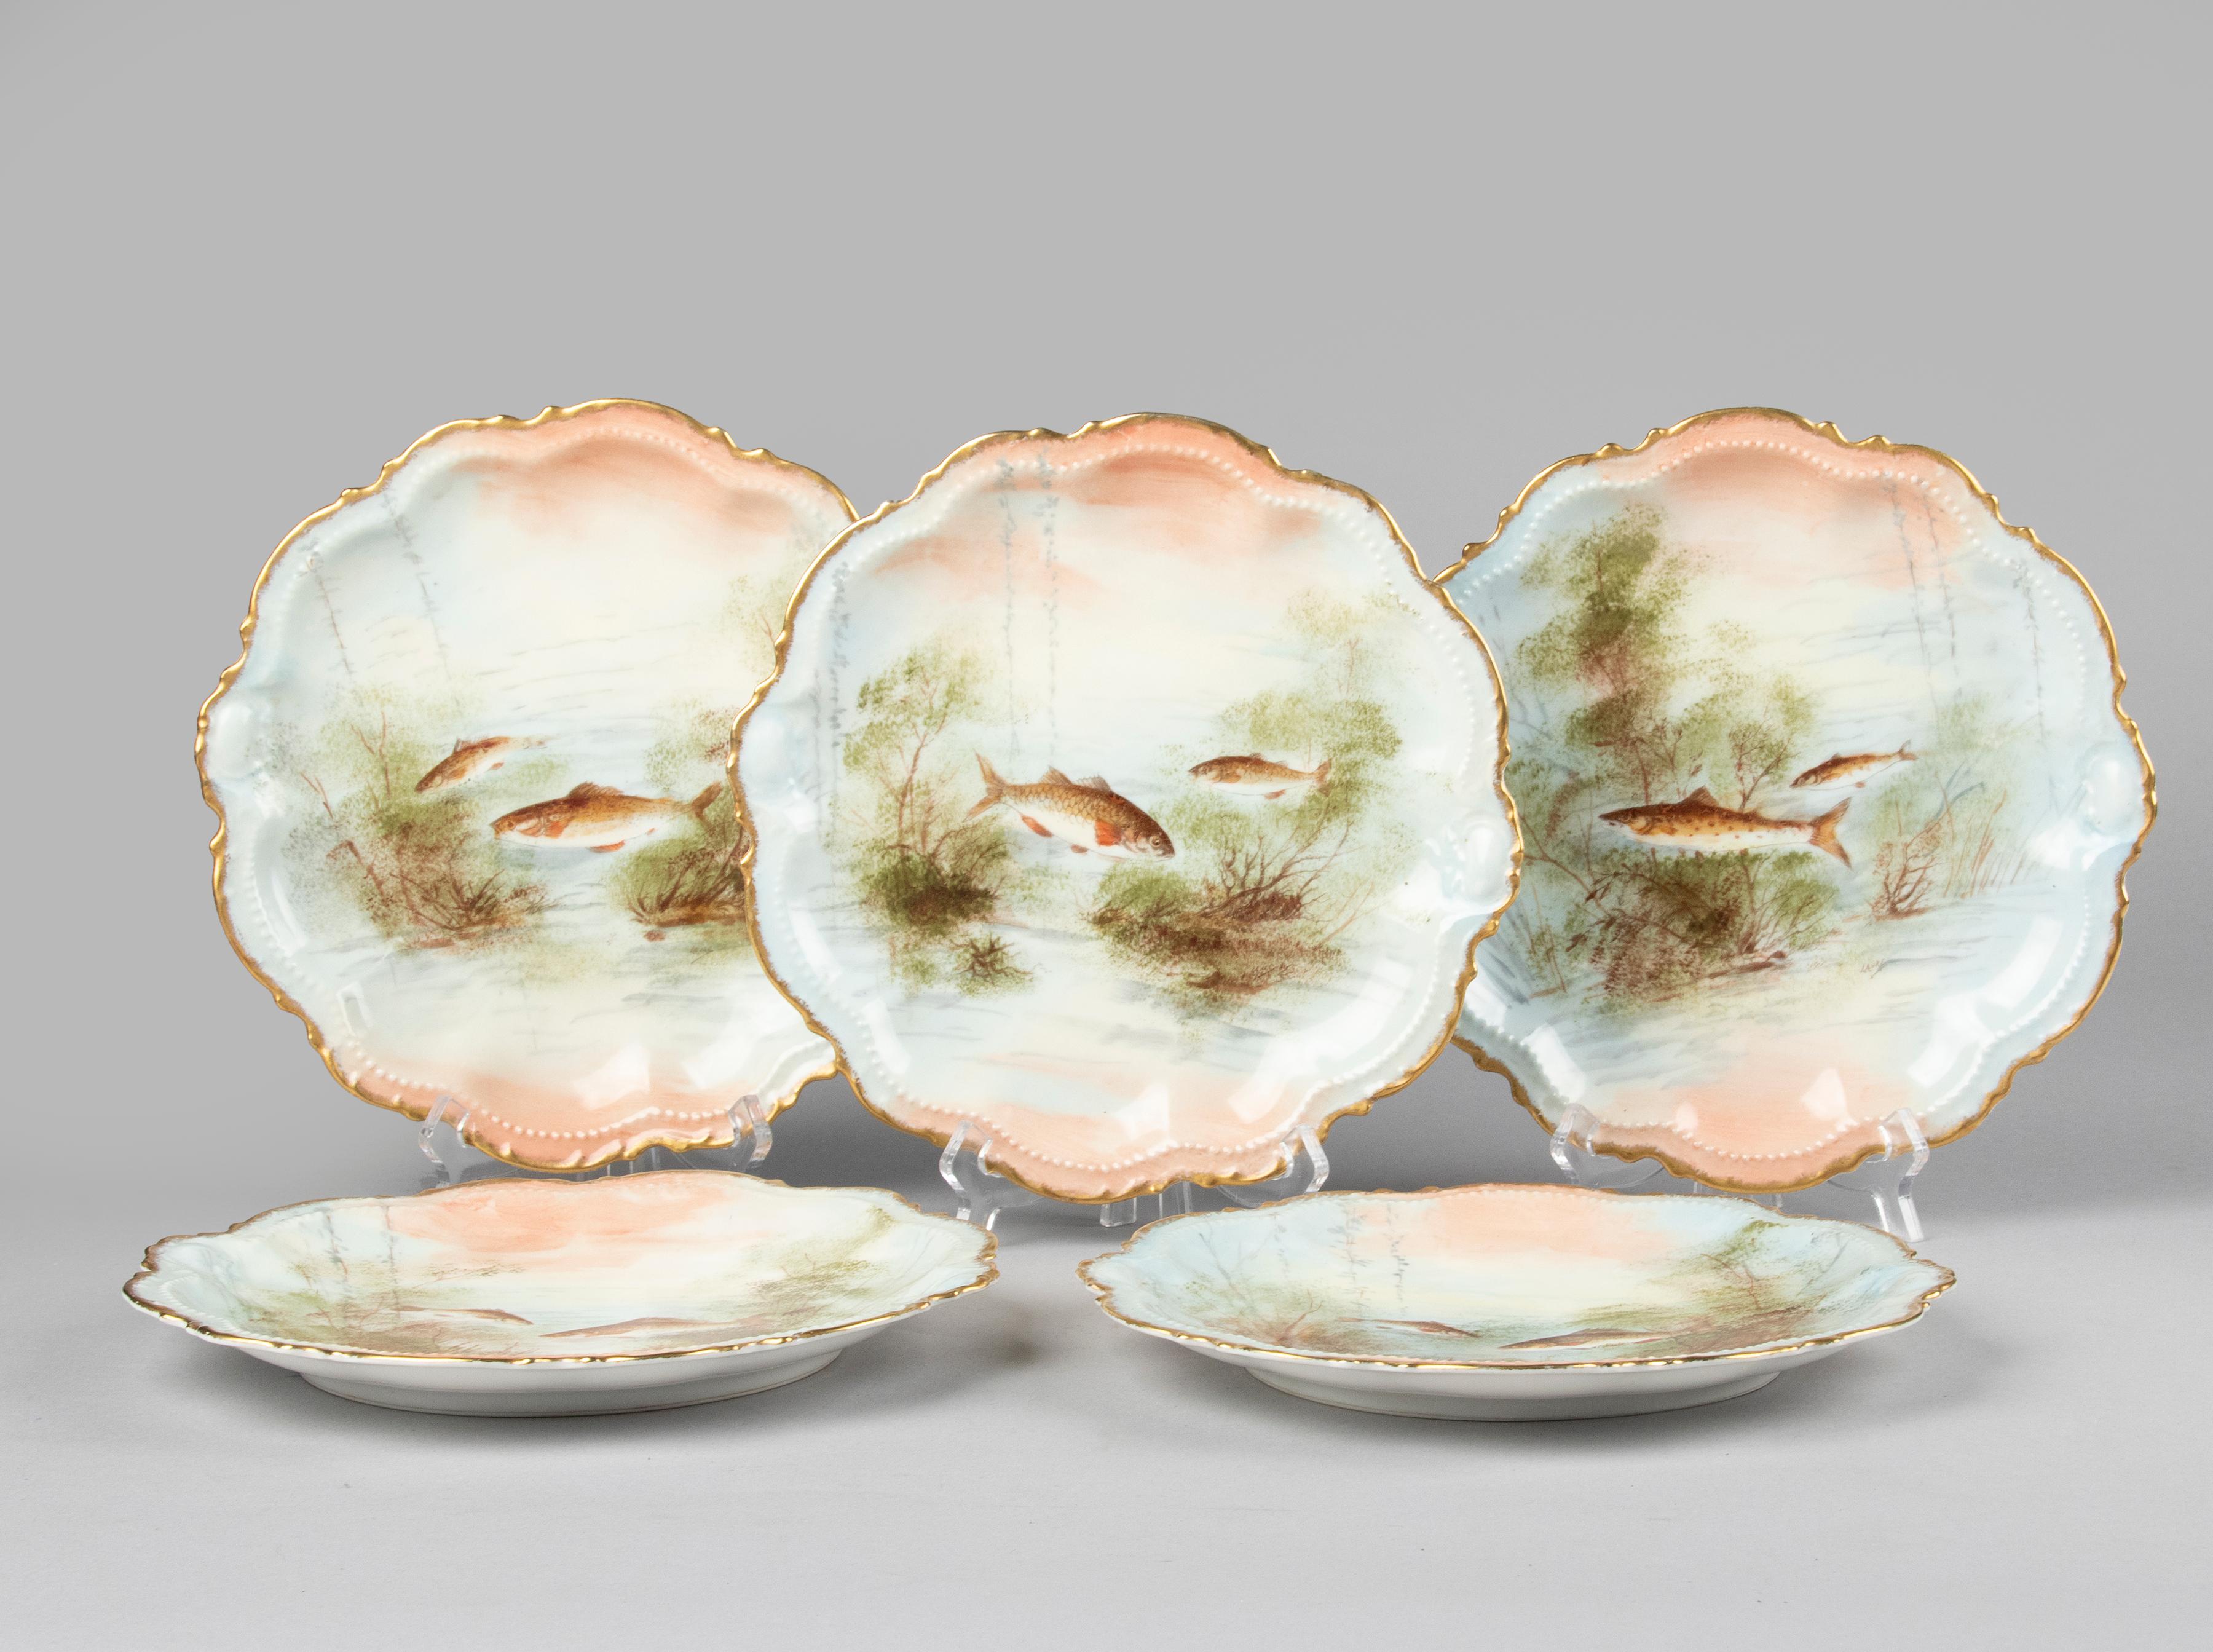 Romantic Set of 5 Antique Porcelain Fish Plates by Limoges